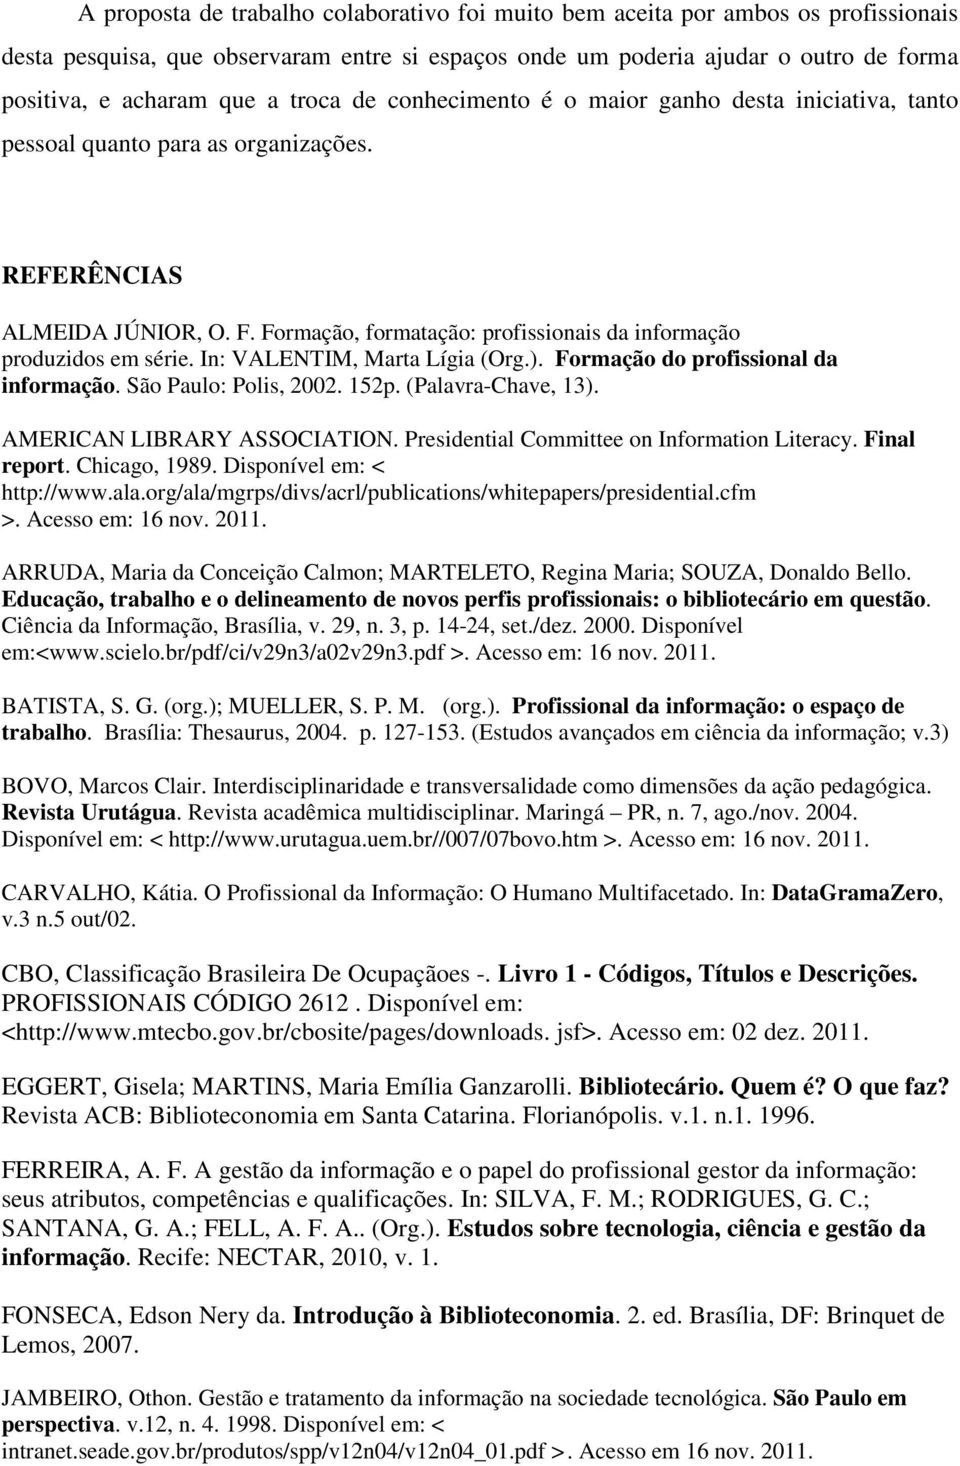 Formação, formatação: profissionais da informação produzidos em série. In: VALENTIM, Marta Lígia (Org.). Formação do profissional da informação. São Paulo: Polis, 2002. 152p. (Palavra-Chave, 13).